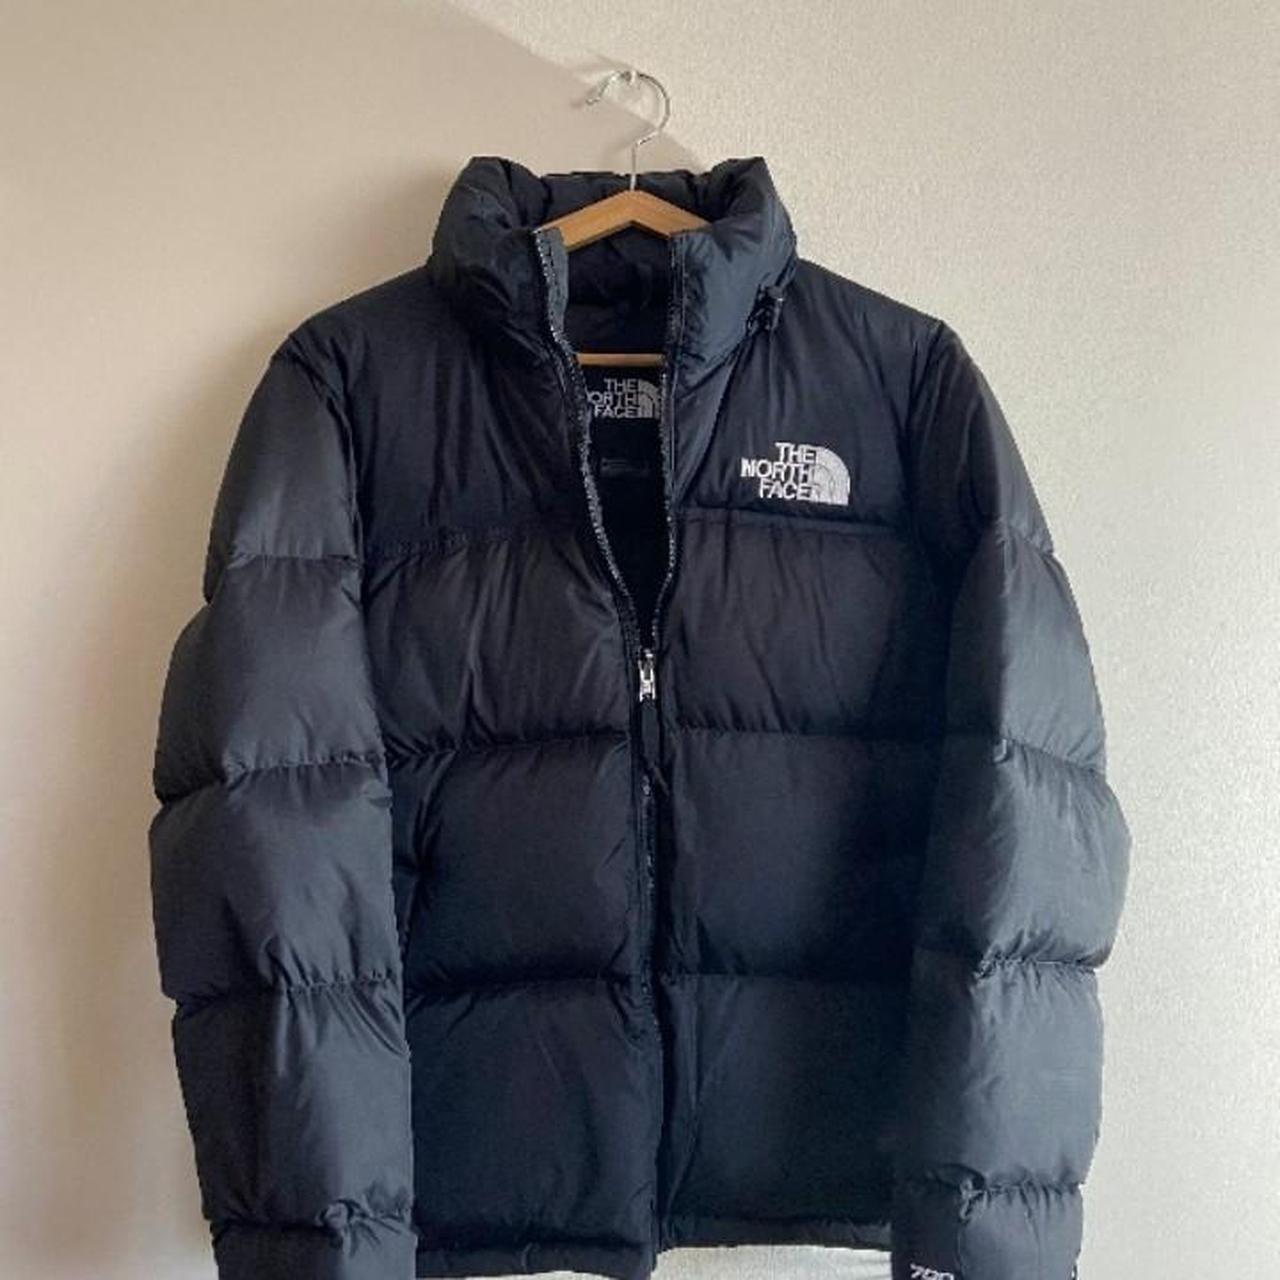 North Face 1996 Nupste 700 Puffer Jacket 📲 ig:... - Depop